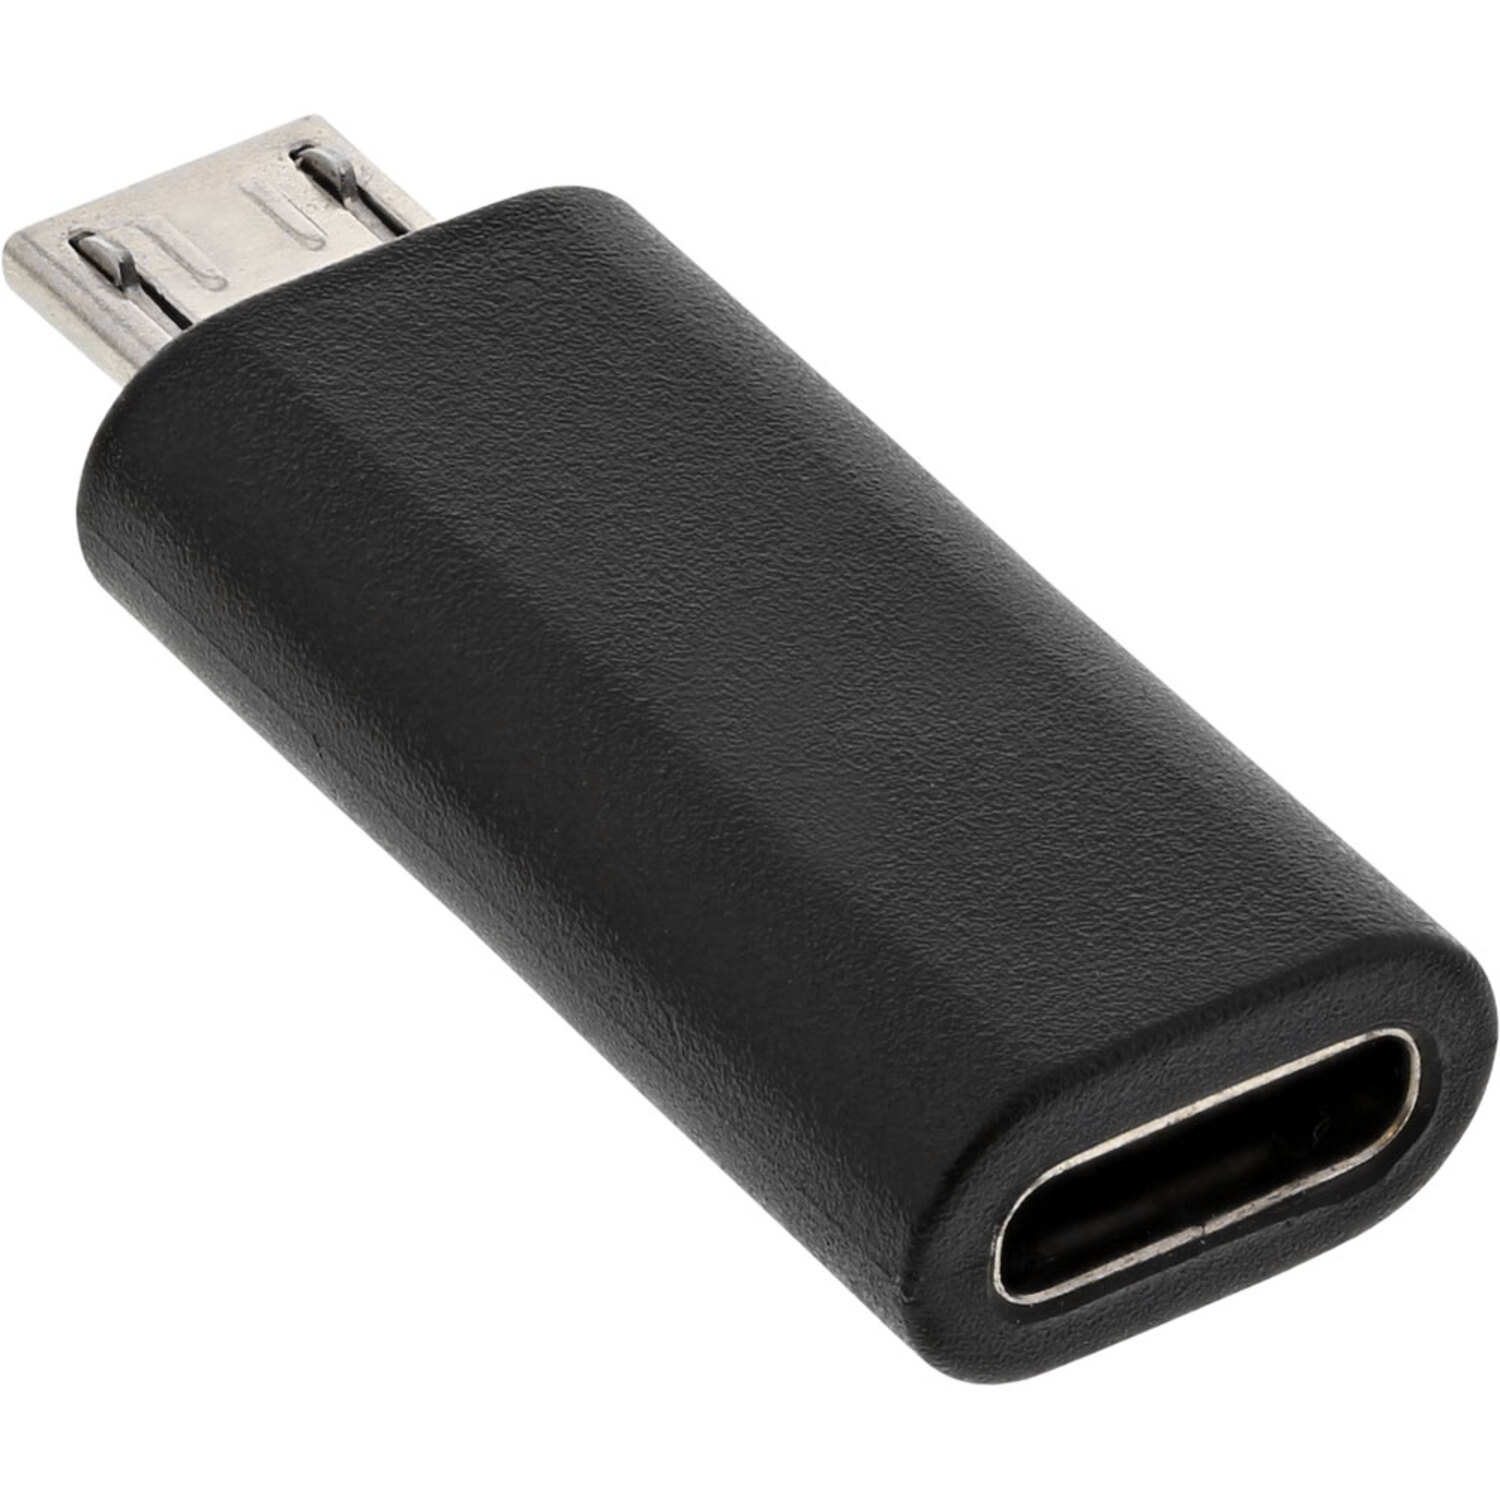 auf Buchse Stecker / USB schwarz InLine® 2.0 Adapter, Adapter, USB INLINE 2.0 USB-C Adapter Micro-USB